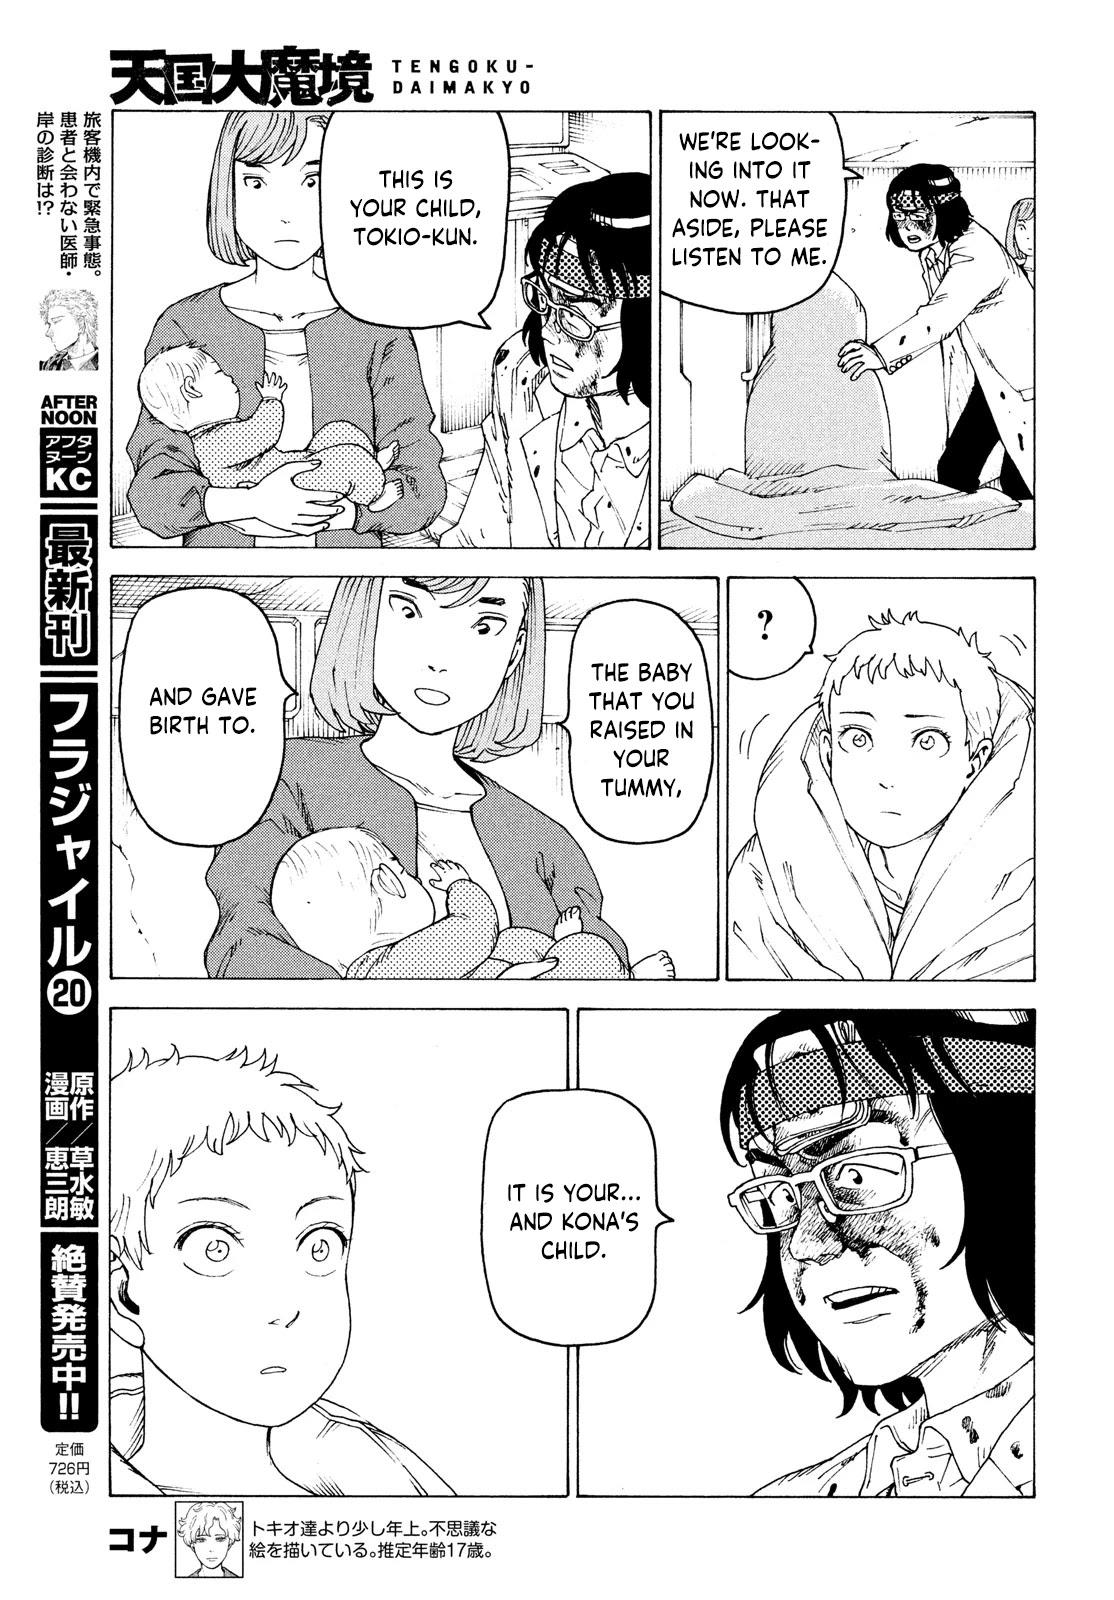 Tengoku Daimakyou Chapter 37 page 27 - Mangakakalot